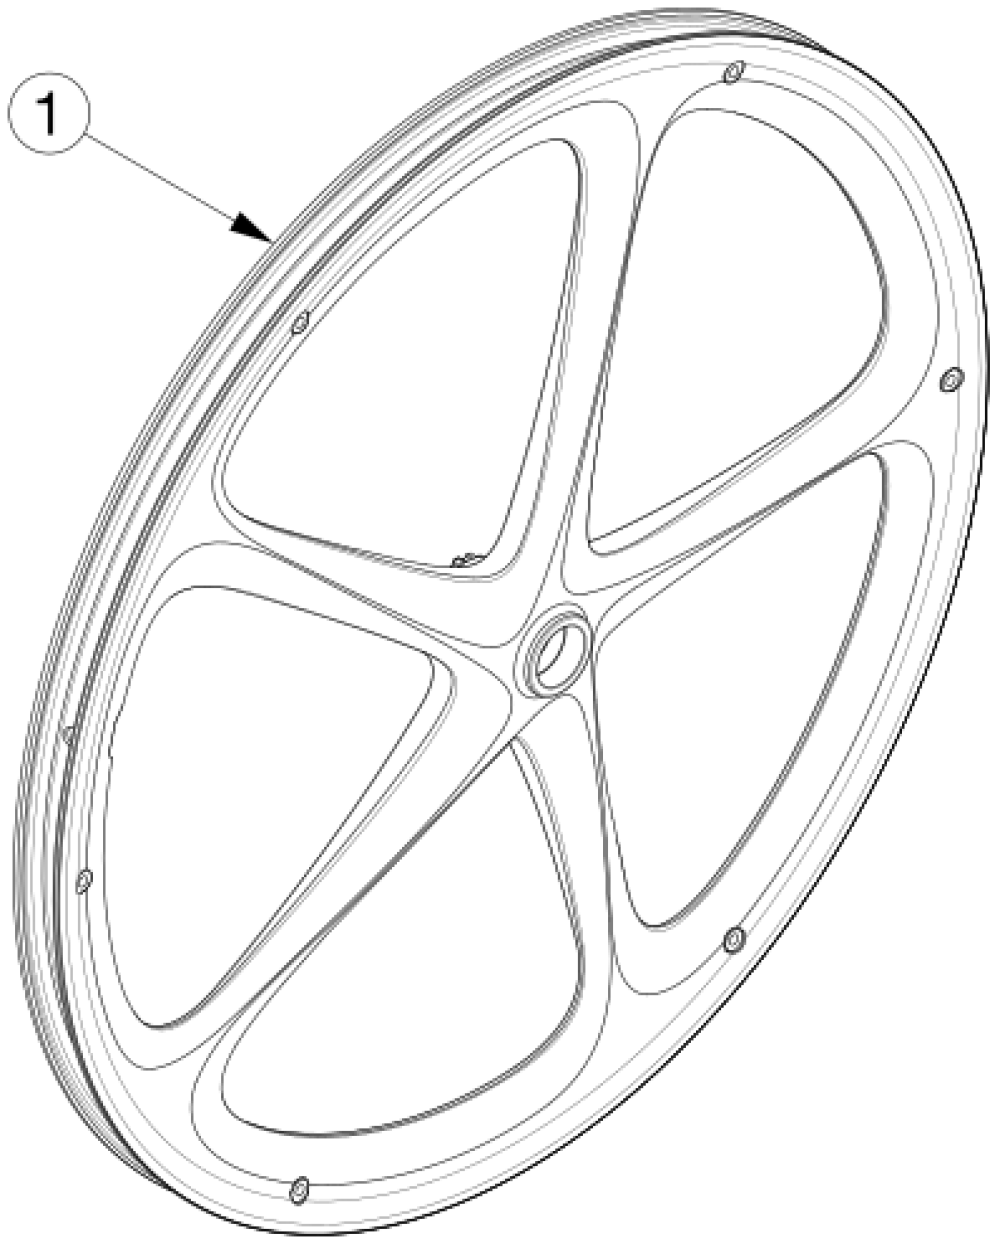 Catalyst 4 Wheels - Maxx Mag parts diagram